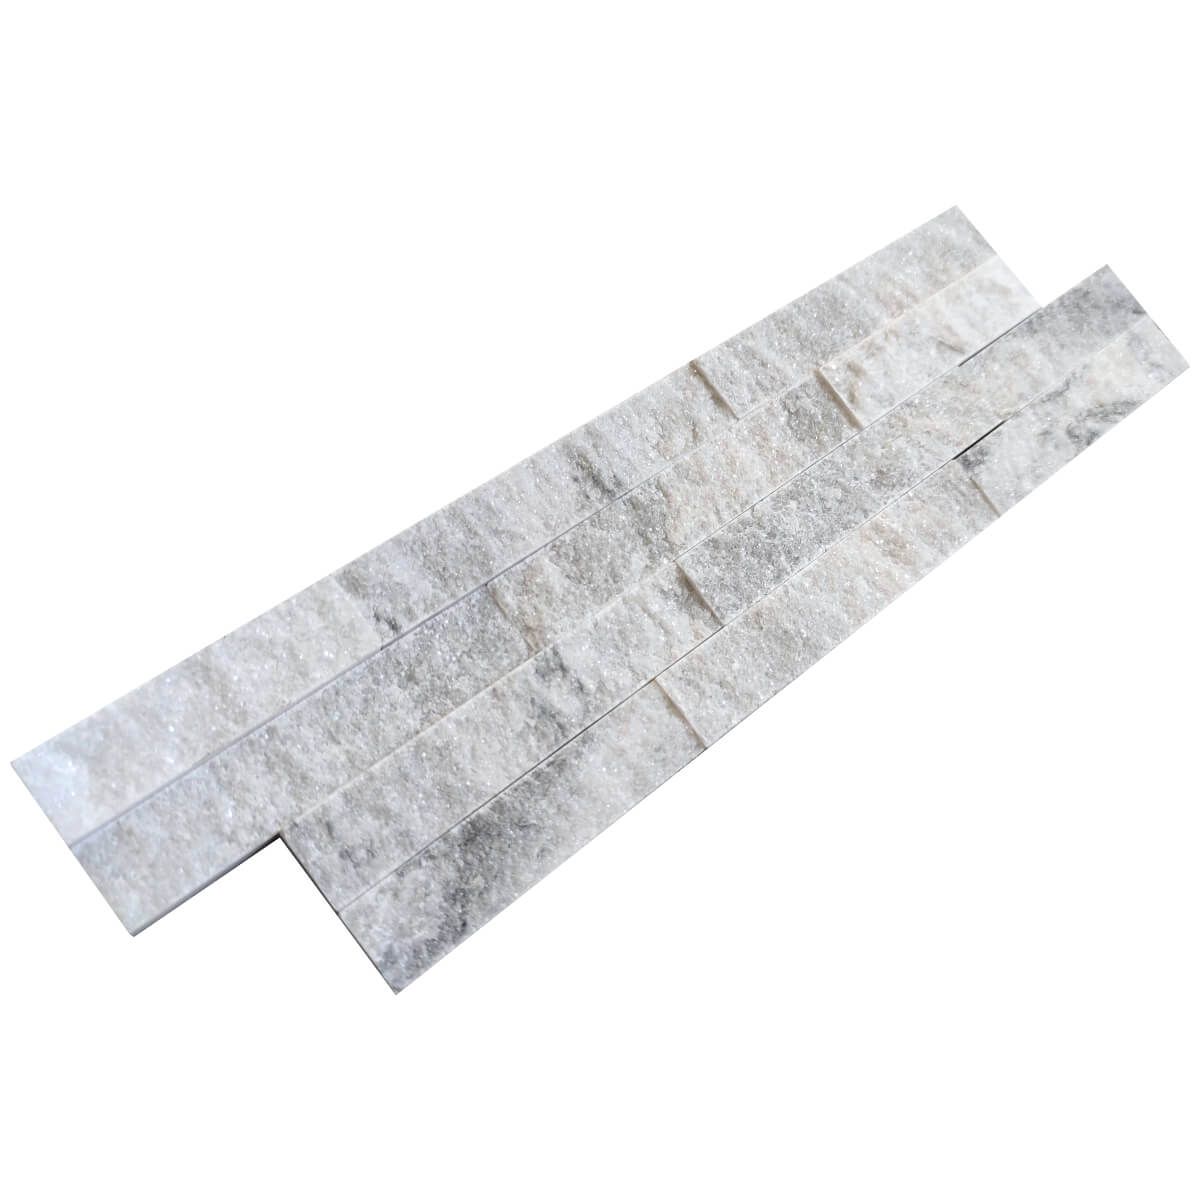 Panel ścienny Marmur Stackstone Stormy Grey 10x36x0,8-1,3 cm